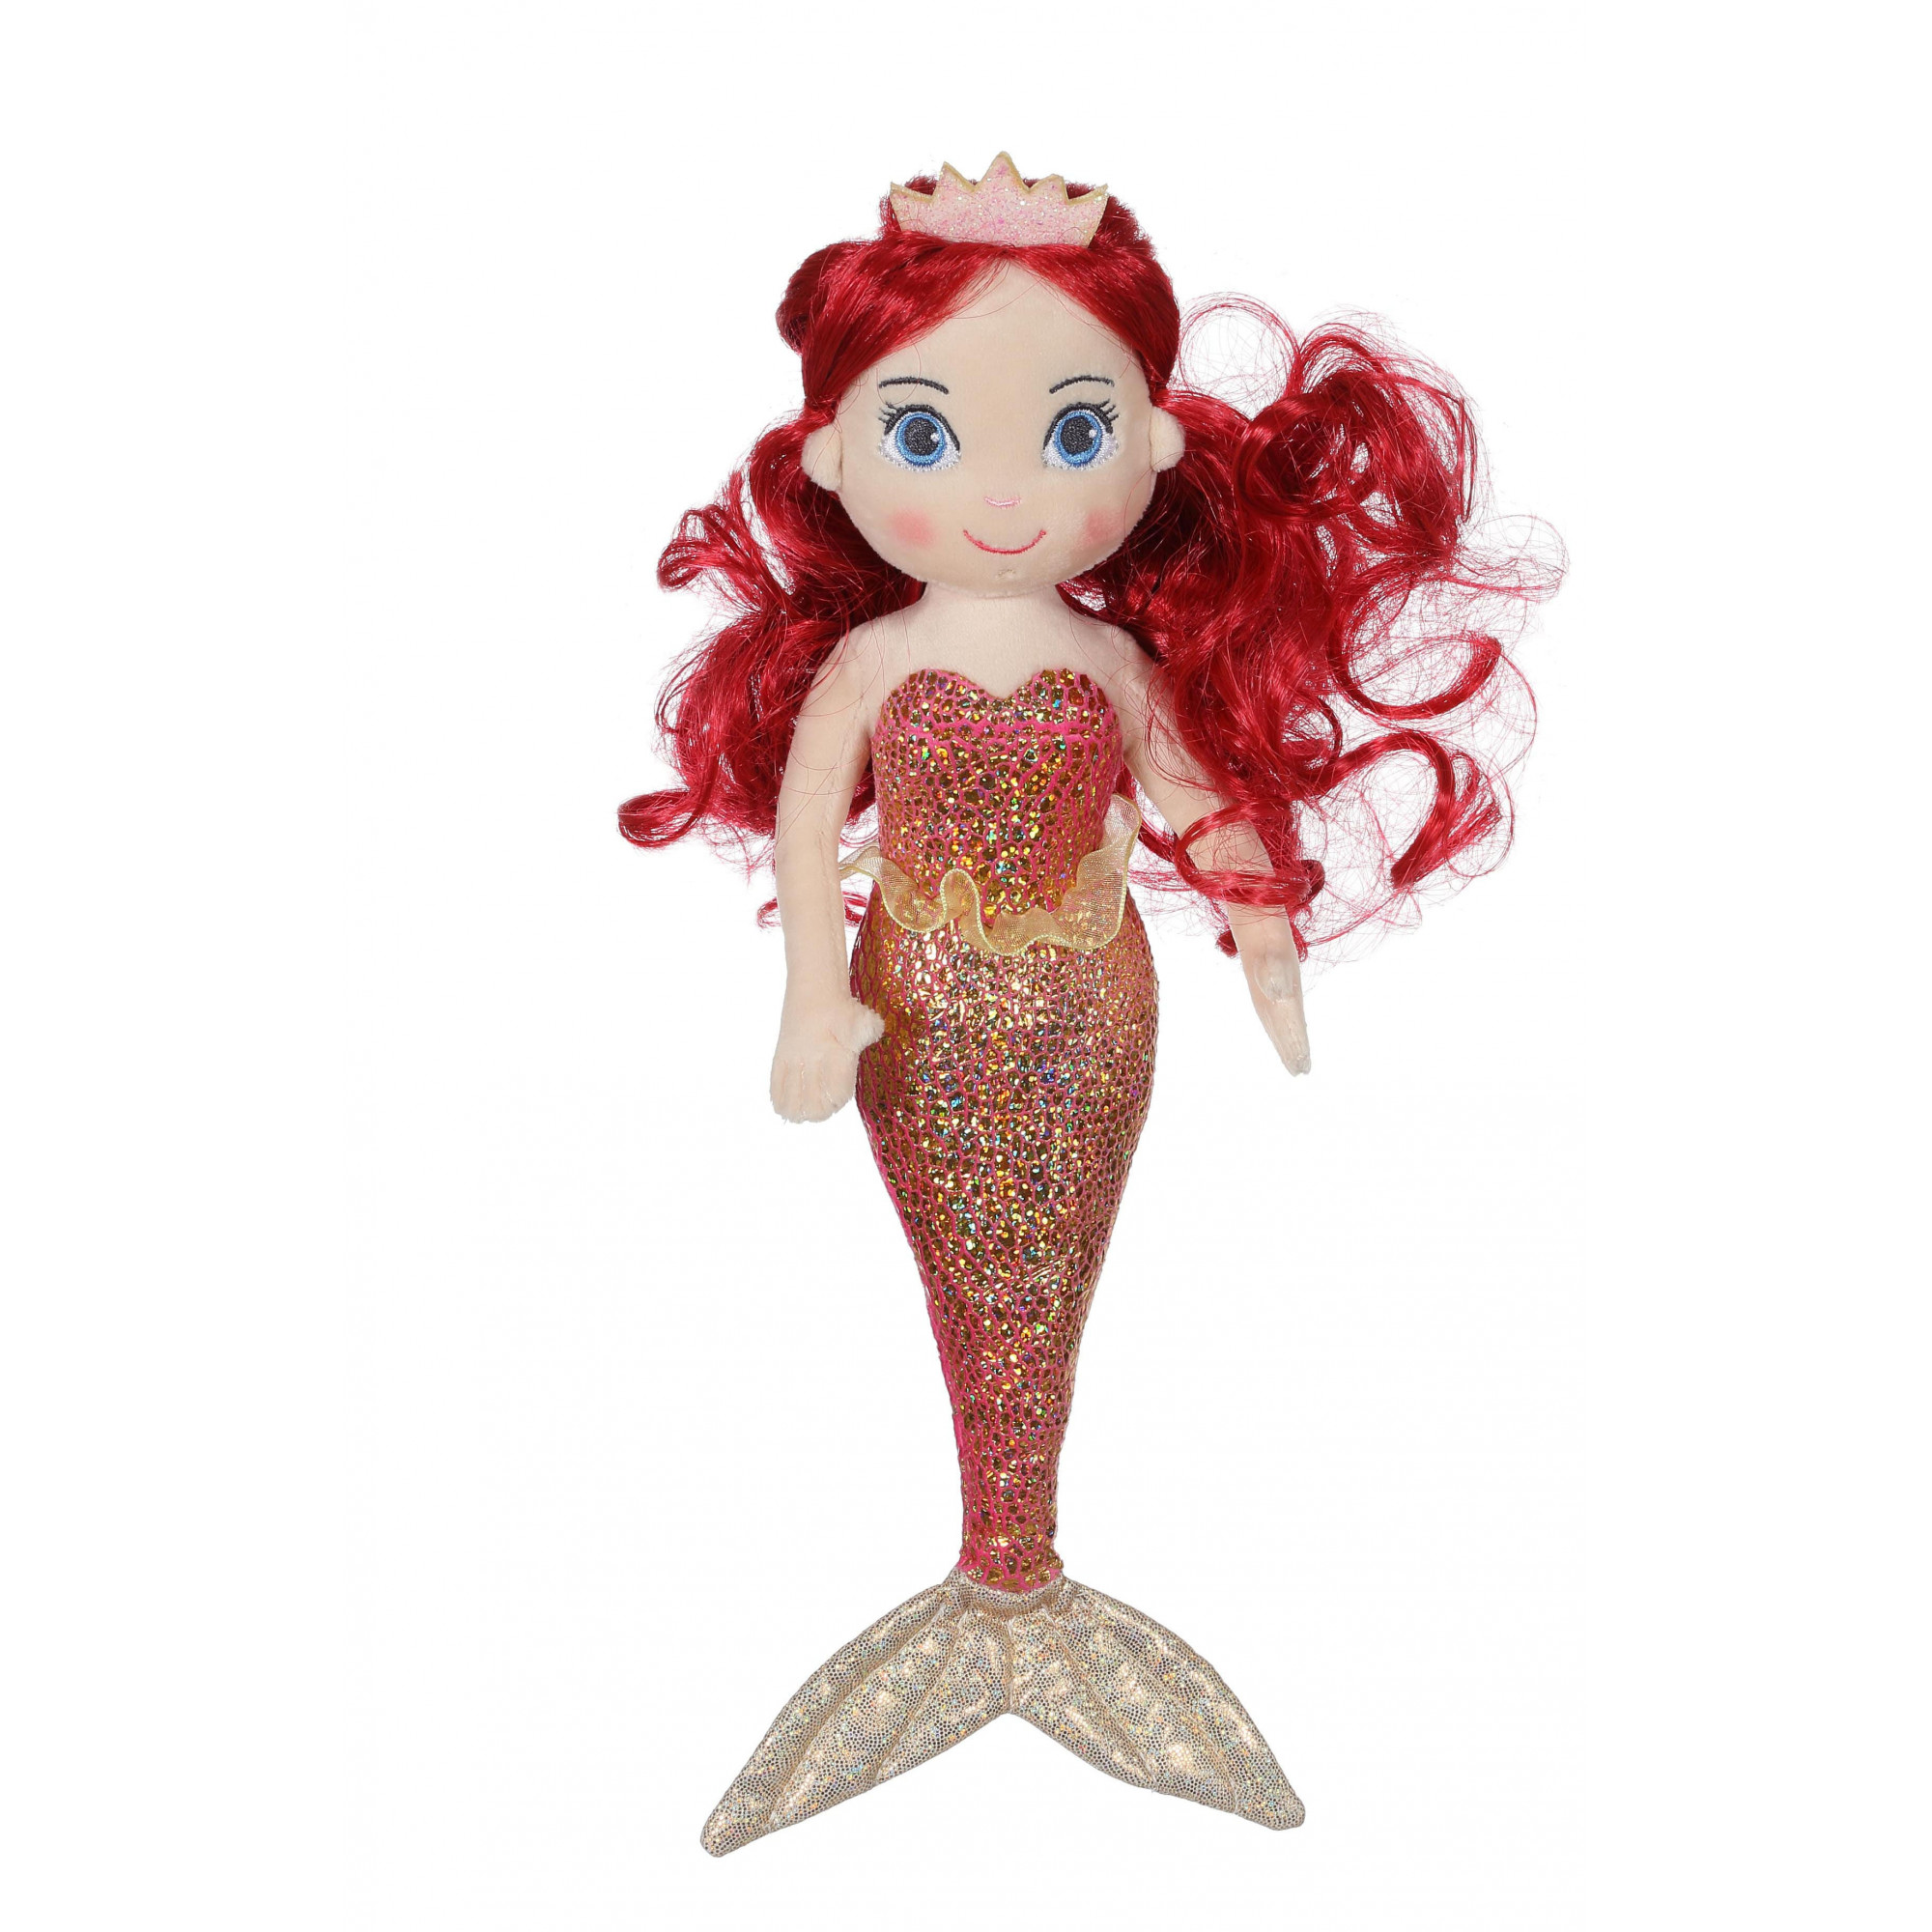 Mermaid “Coralia” - 30 cm - Red Hair